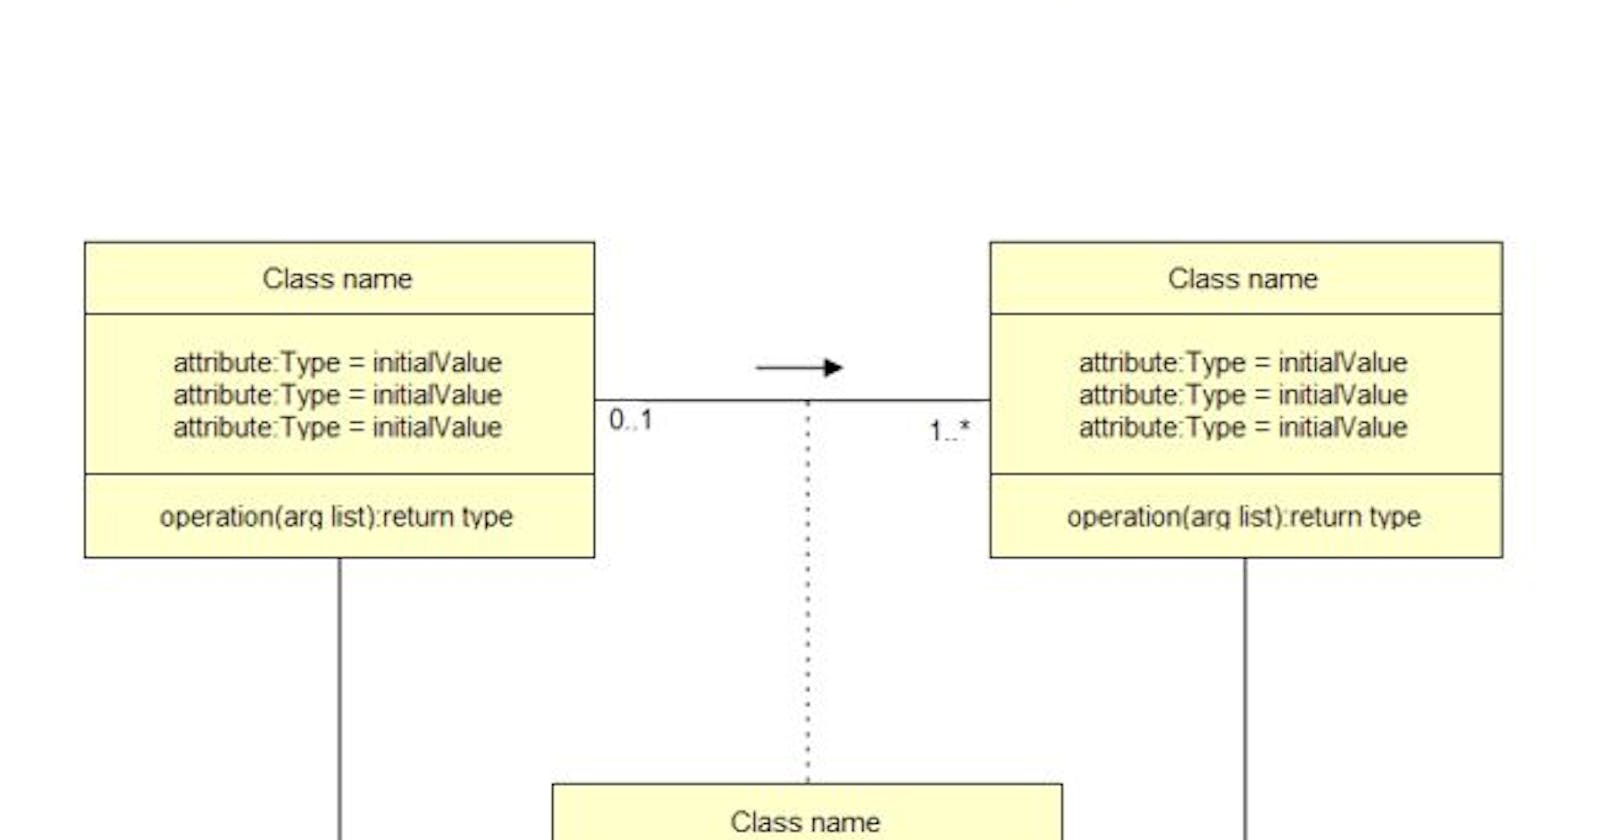 Understanding UML Class Diagrams: A Beginner's Guide